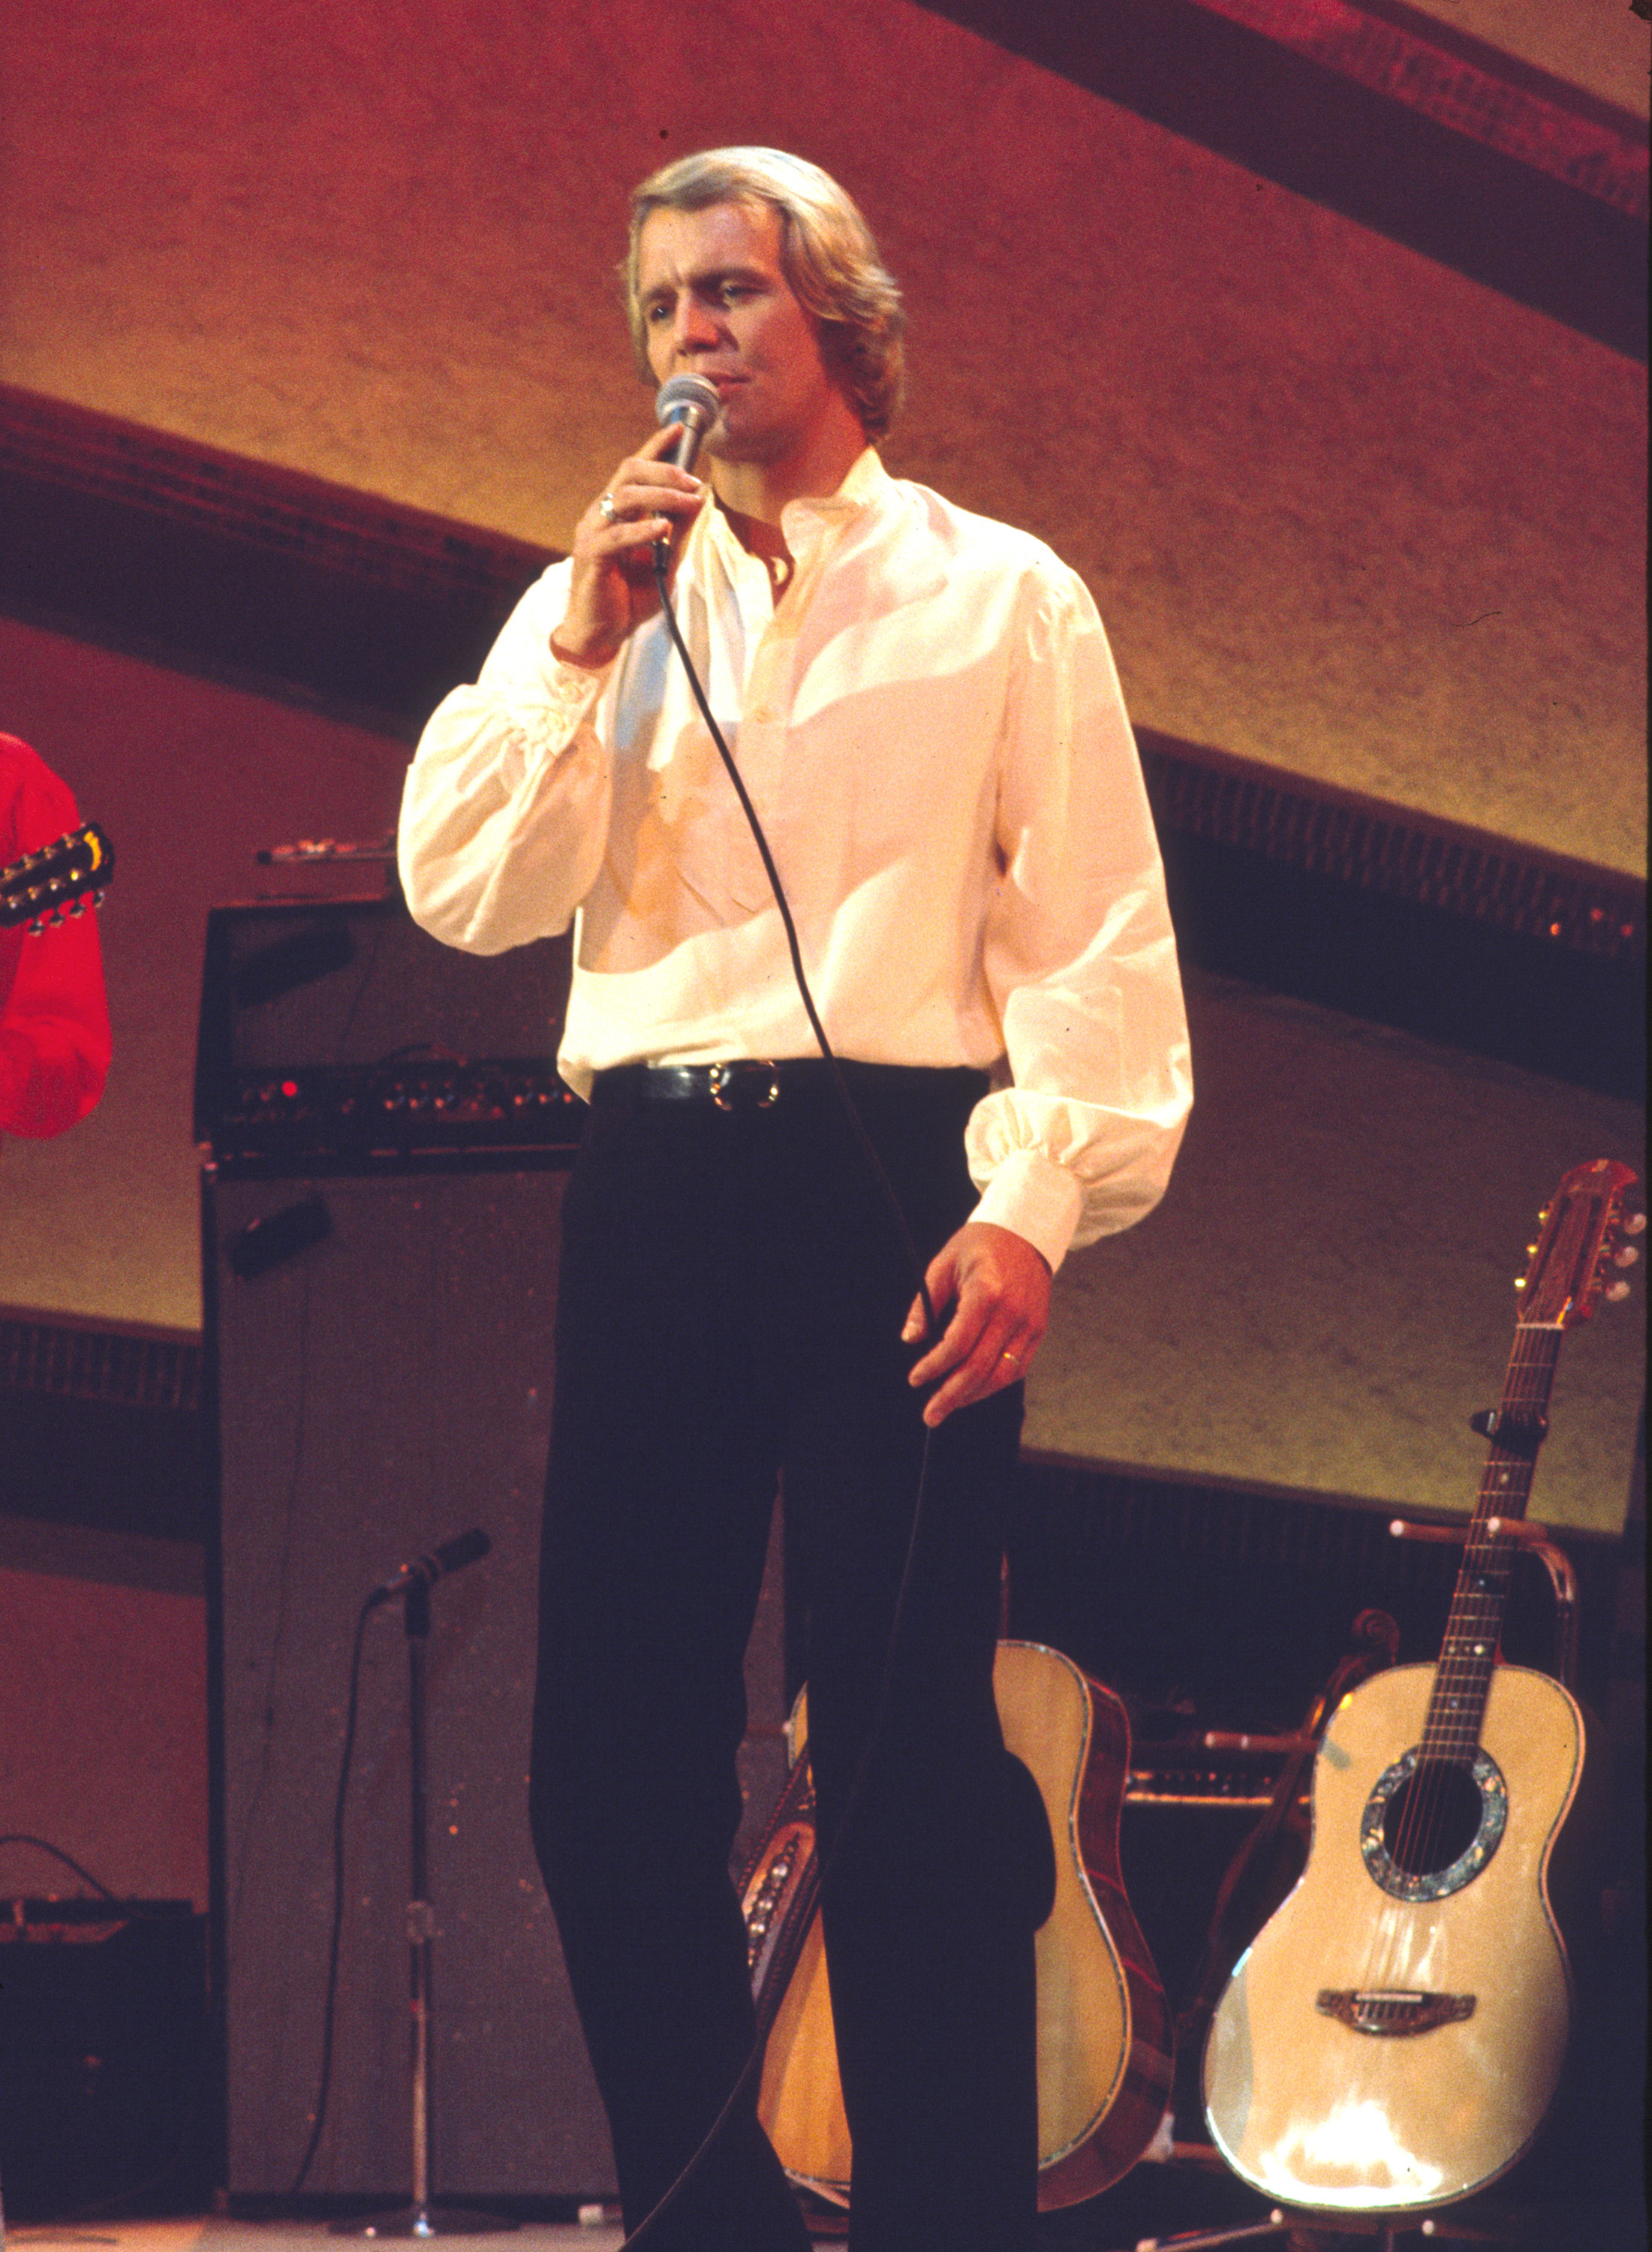 David war in Großbritannien so beliebt, dass er zwei Nummer-1-Singles hatte – „Don't Give Up On Us“ und „Silver Lady“.